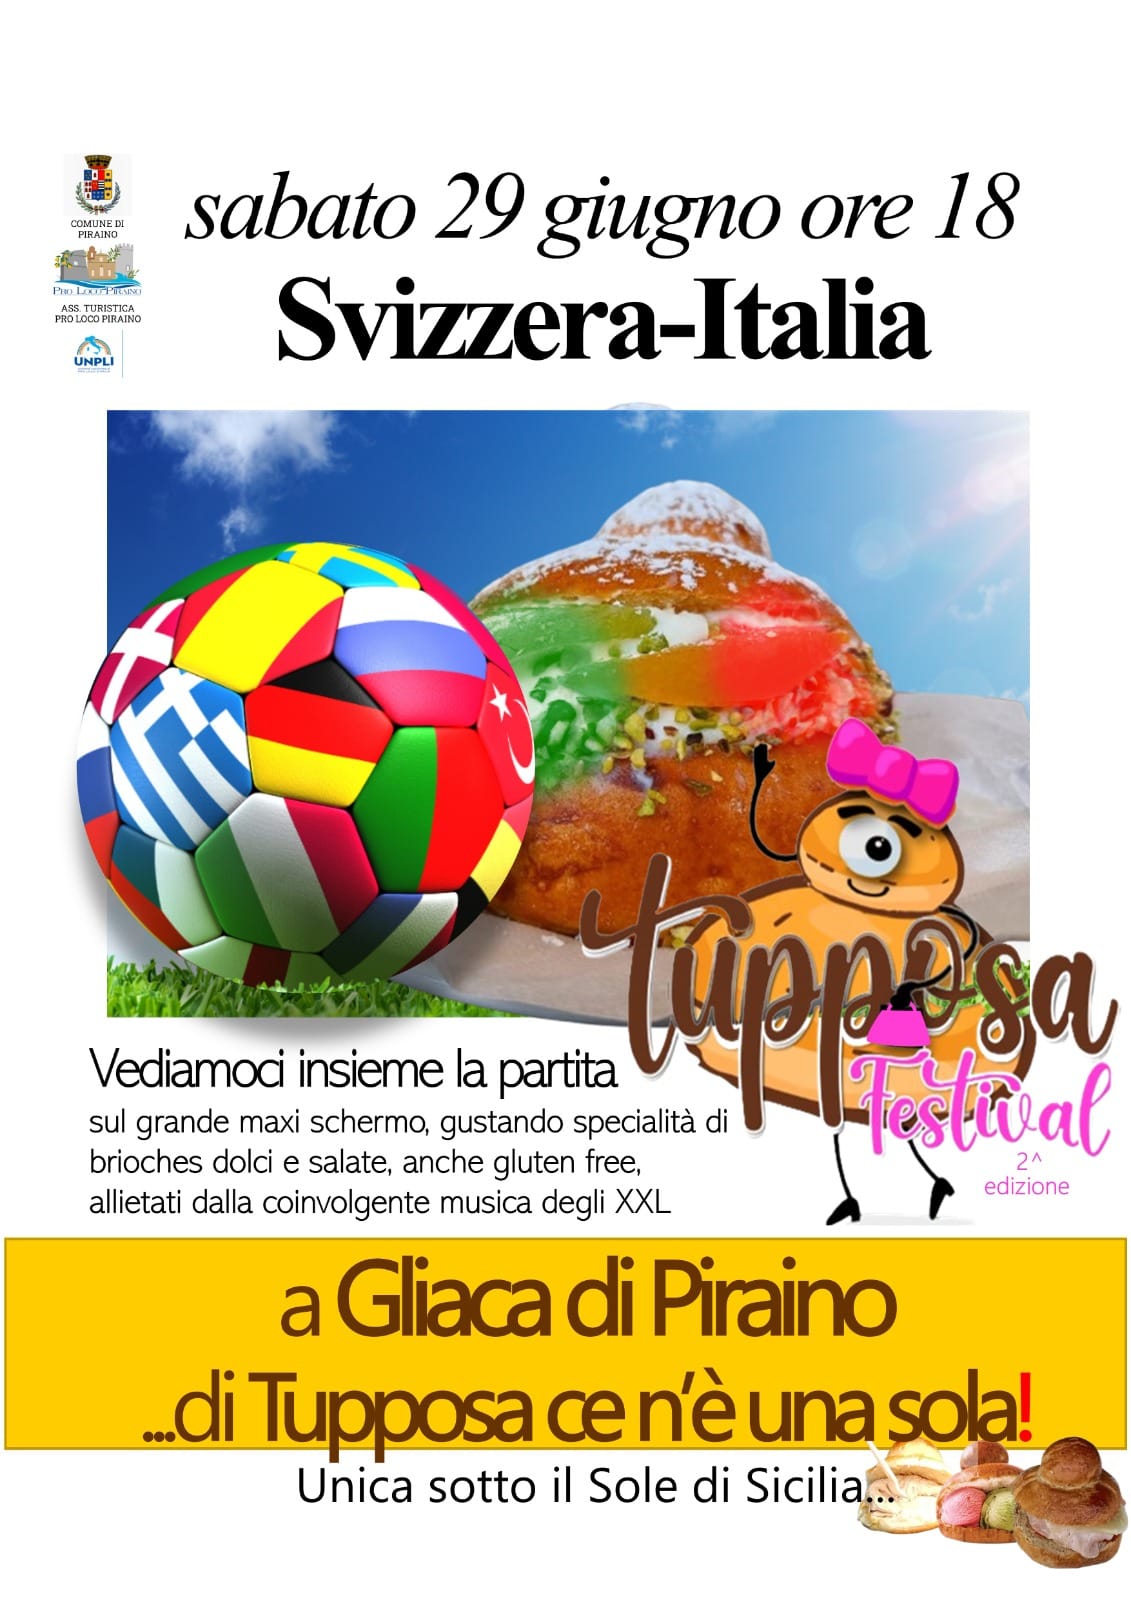 Gliaca di Piraino – TUPPOSA FESTIVAL: Oltre alle brioches anche un grande maxischermo per seguire Svizzera-Italia